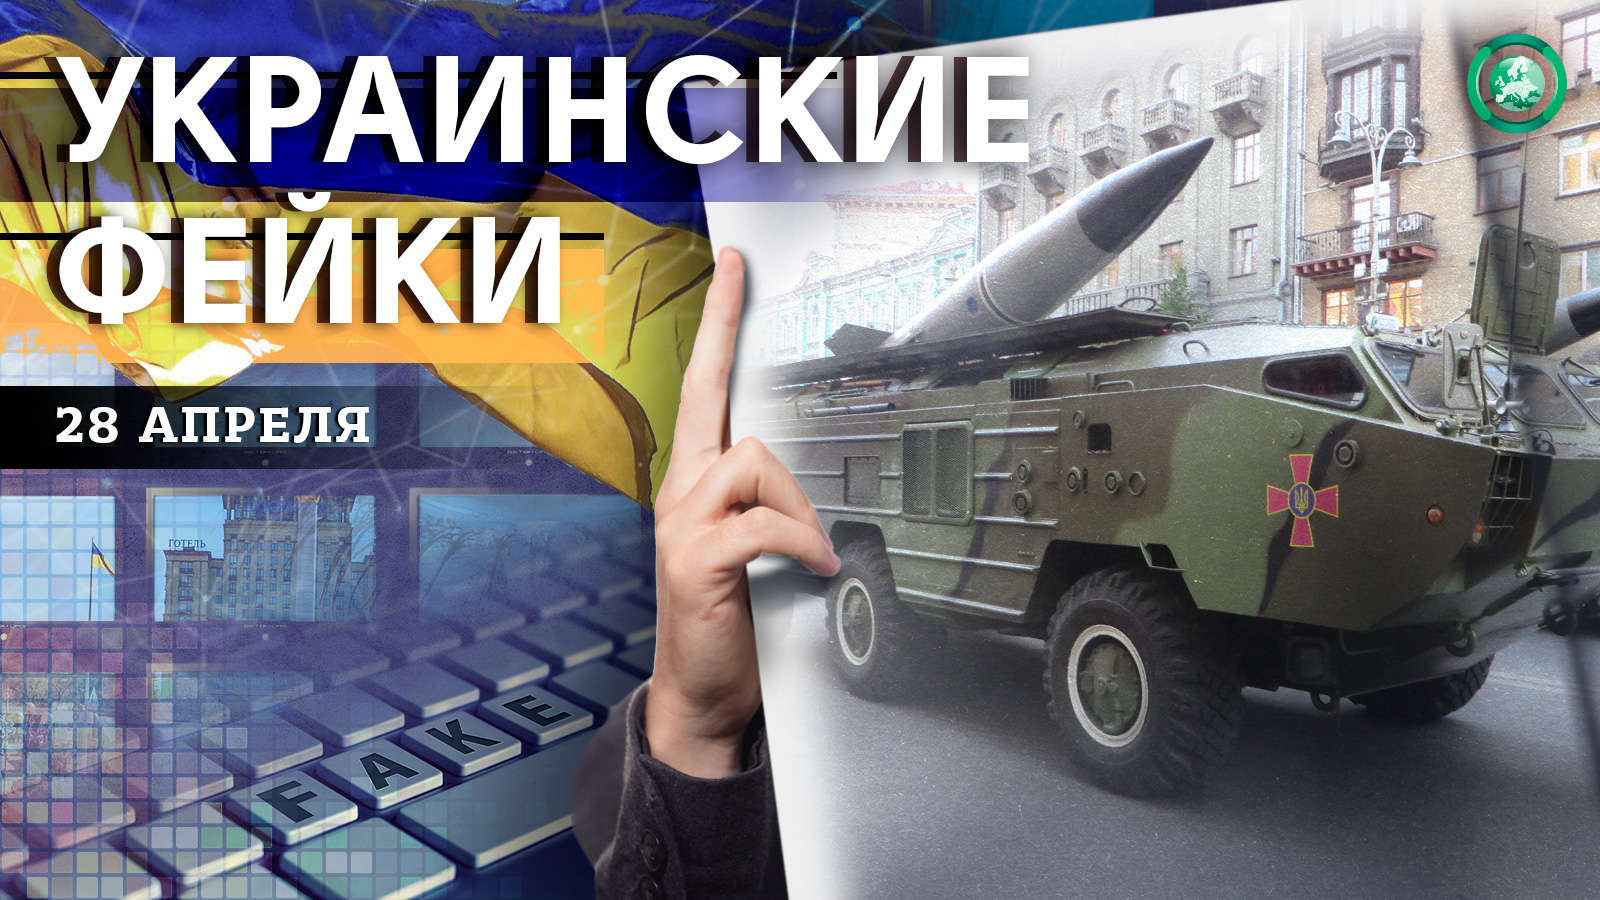 Ночные бои в Изюме и российская ракета — какие фейки распространили на Украине 28 апреля Весь мир